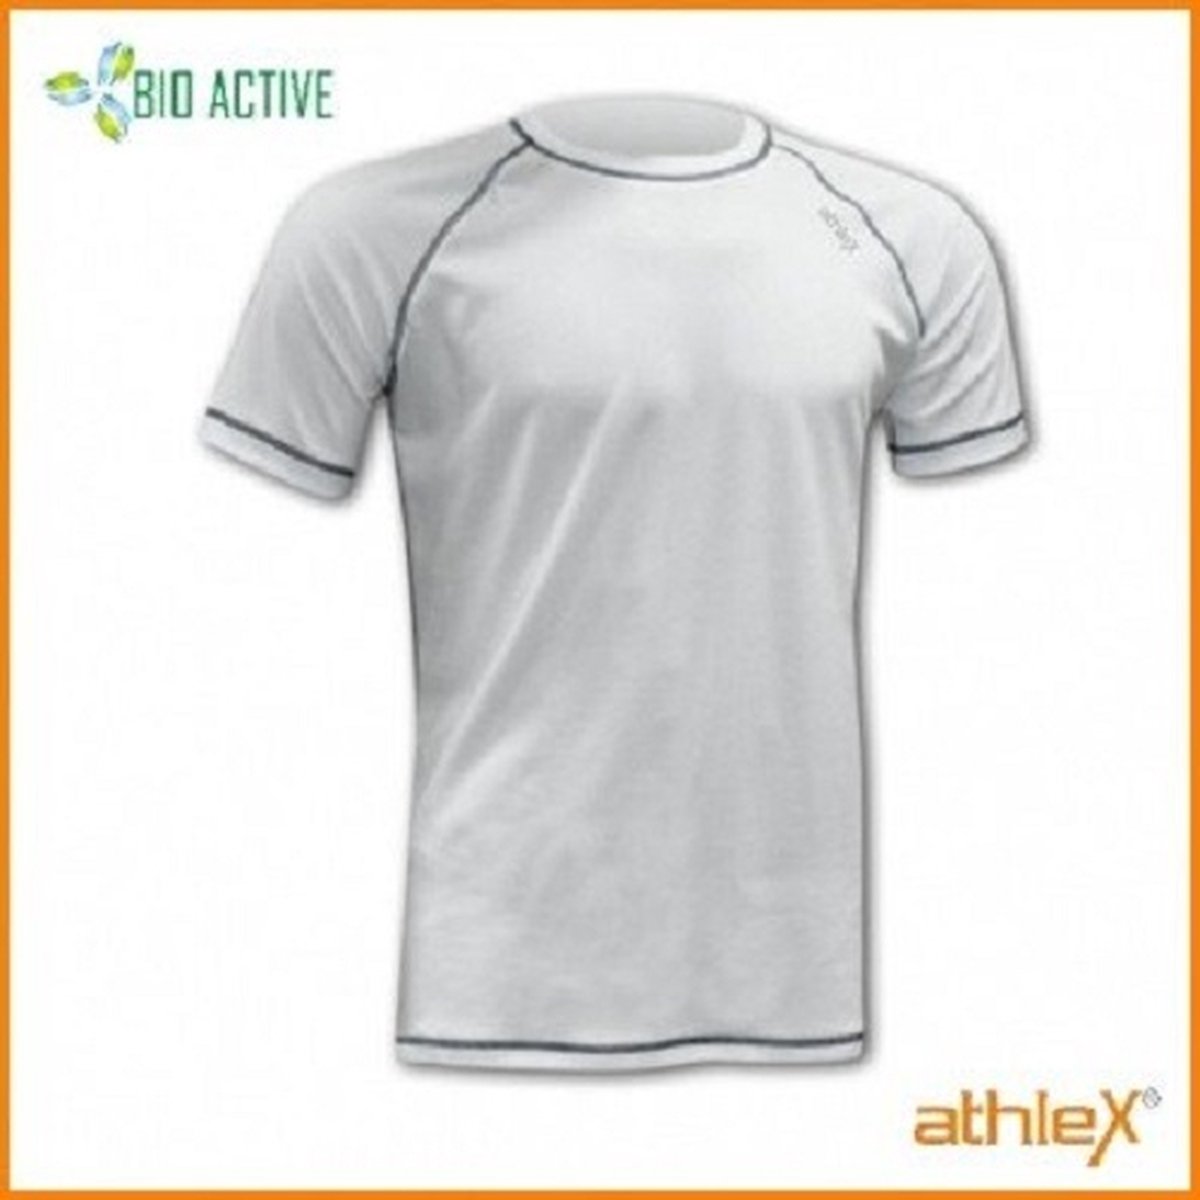 Athlex Bio Active Shirt korte mouw L Wit